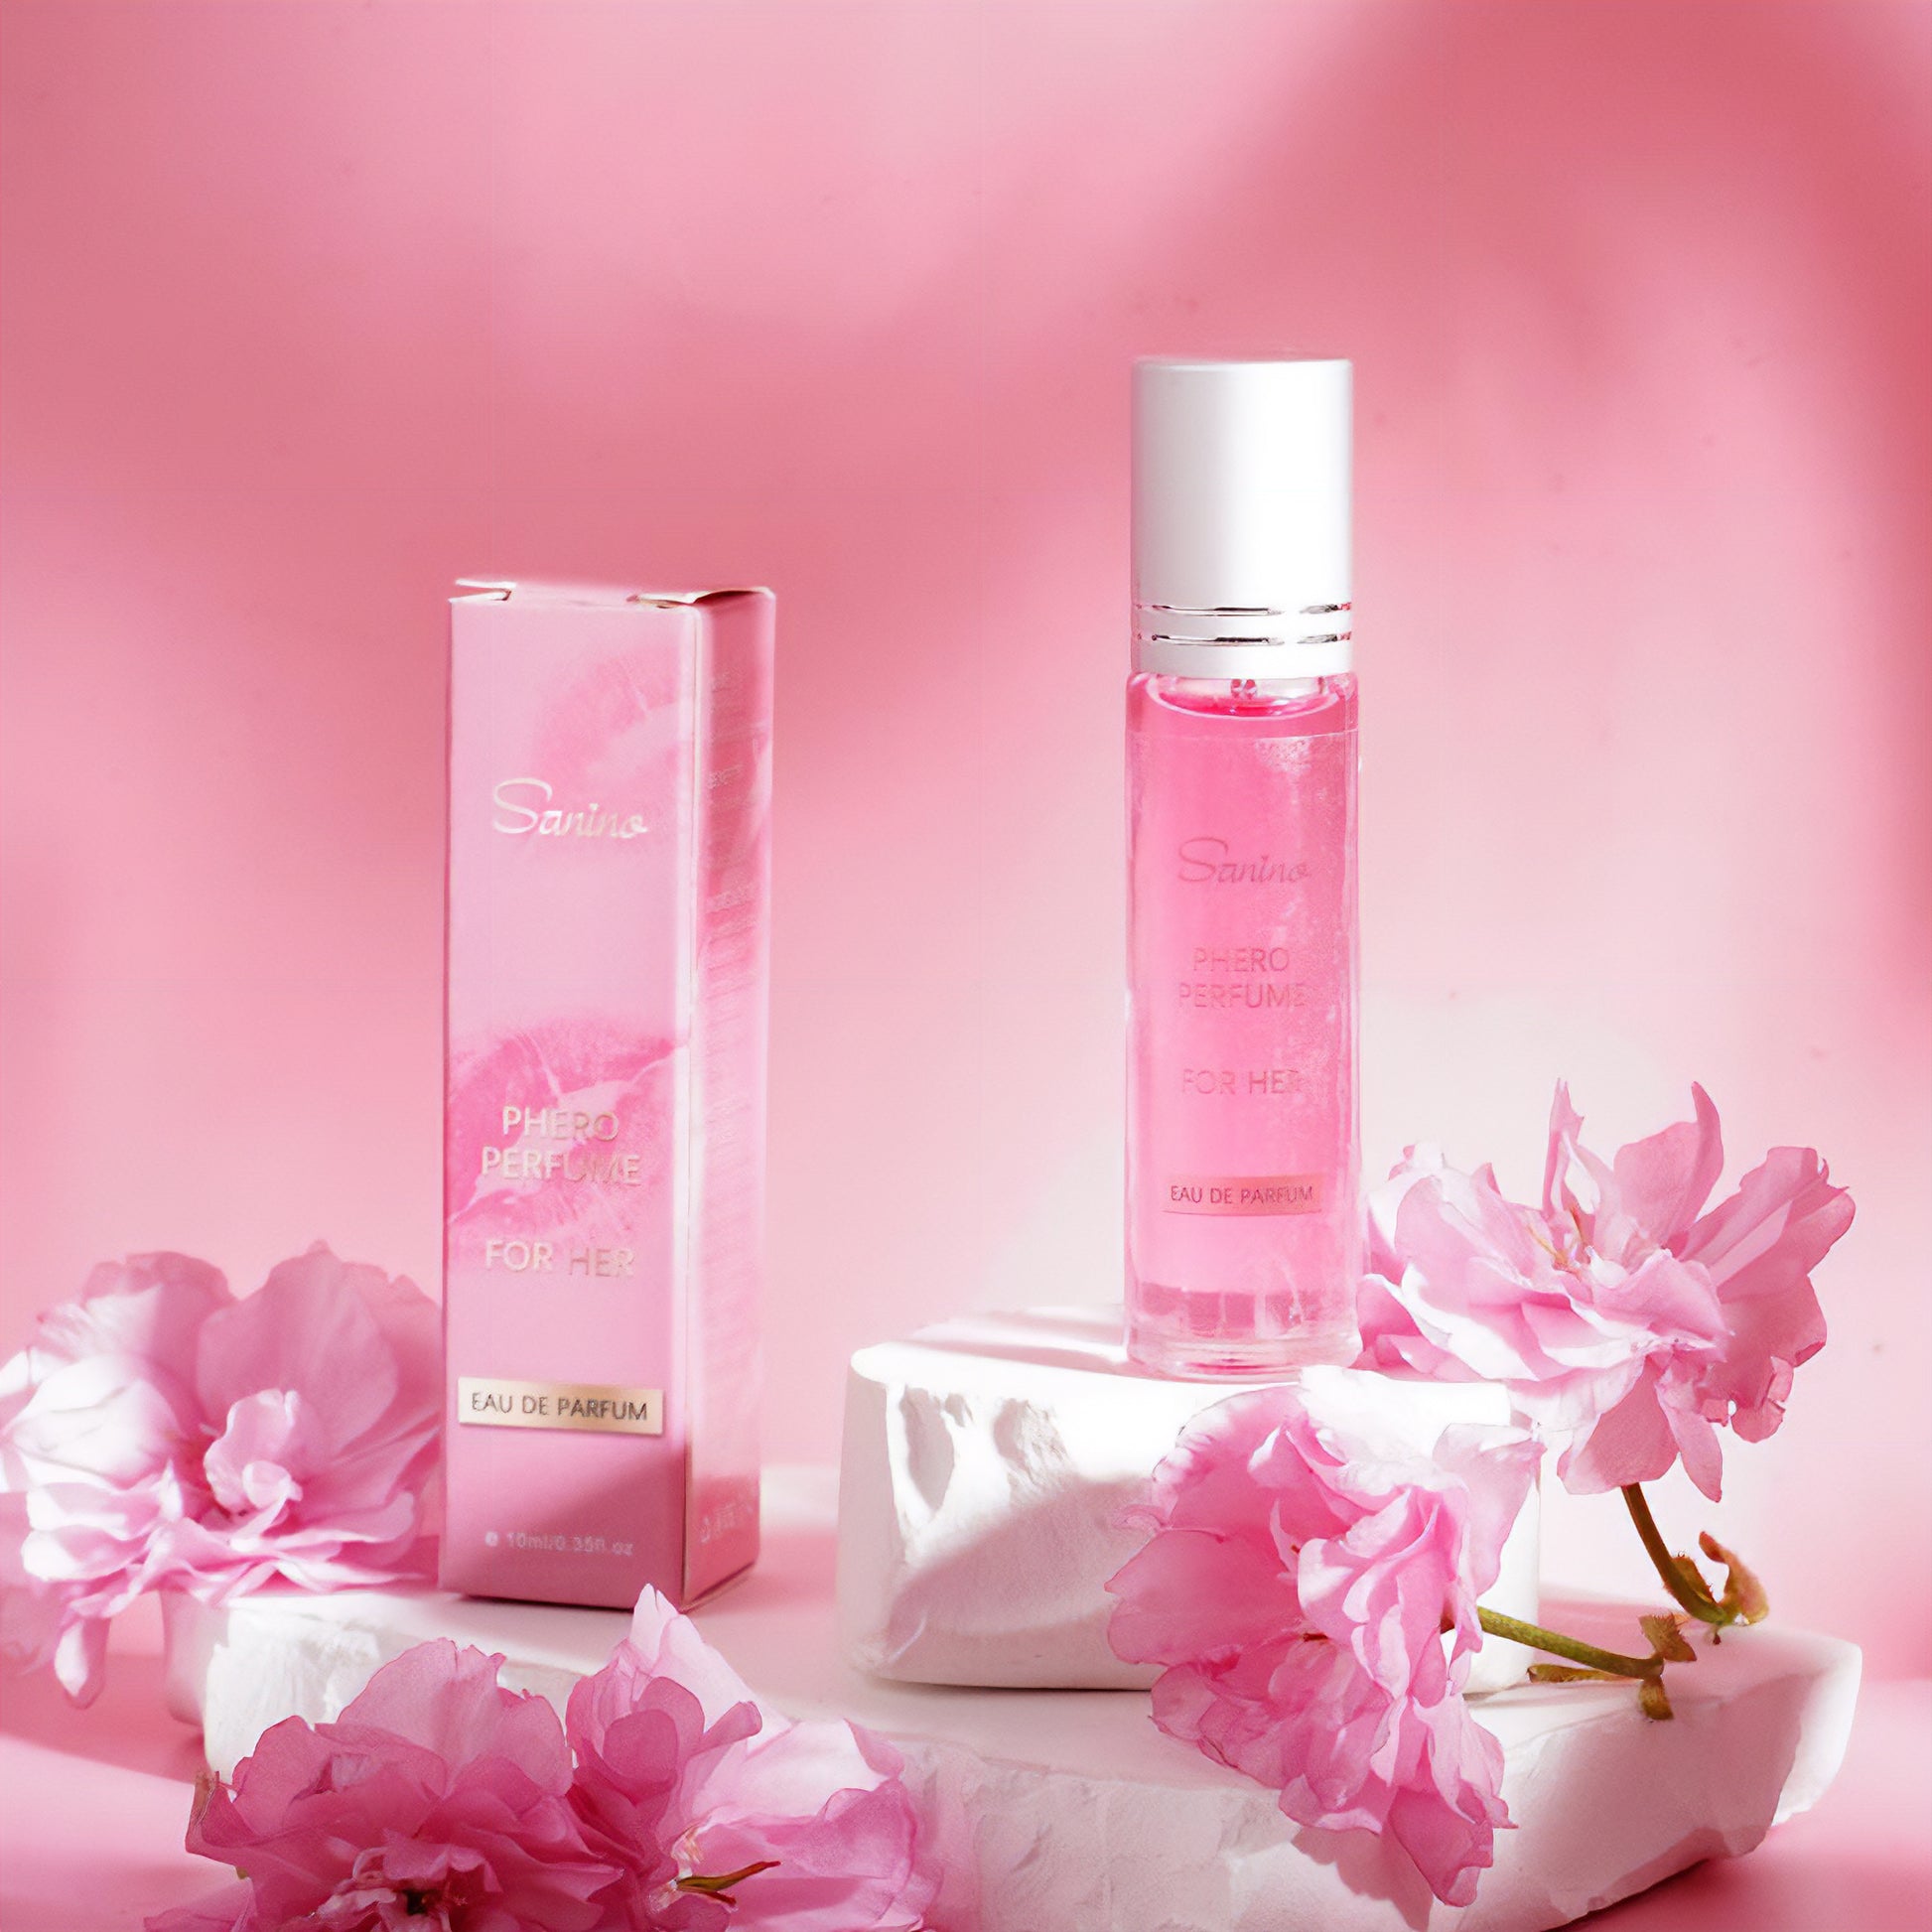 Saninex - Produit de santé intime - Parfum aux phéromones - Parfum